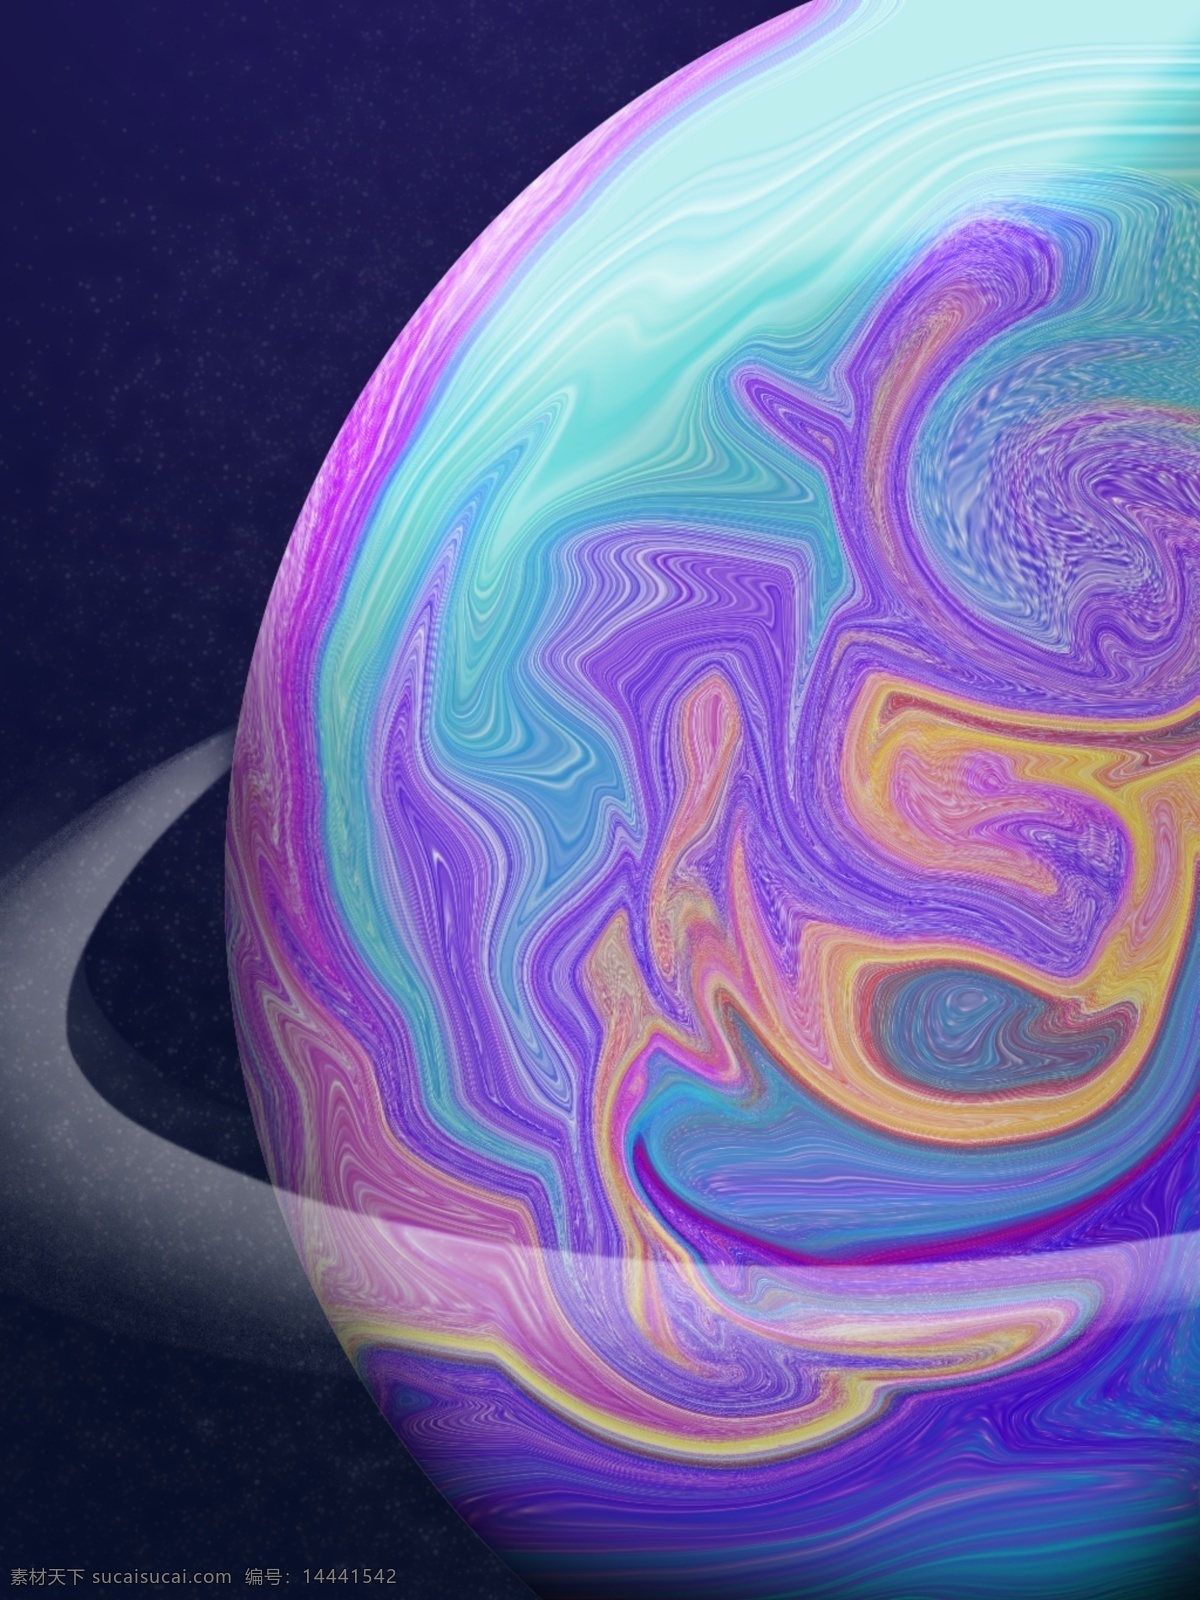 全 原创 油漆 星球 行星 环 h5 背景 时光穿梭 气态星球 行星环 紫色 蓝色 油漆风格